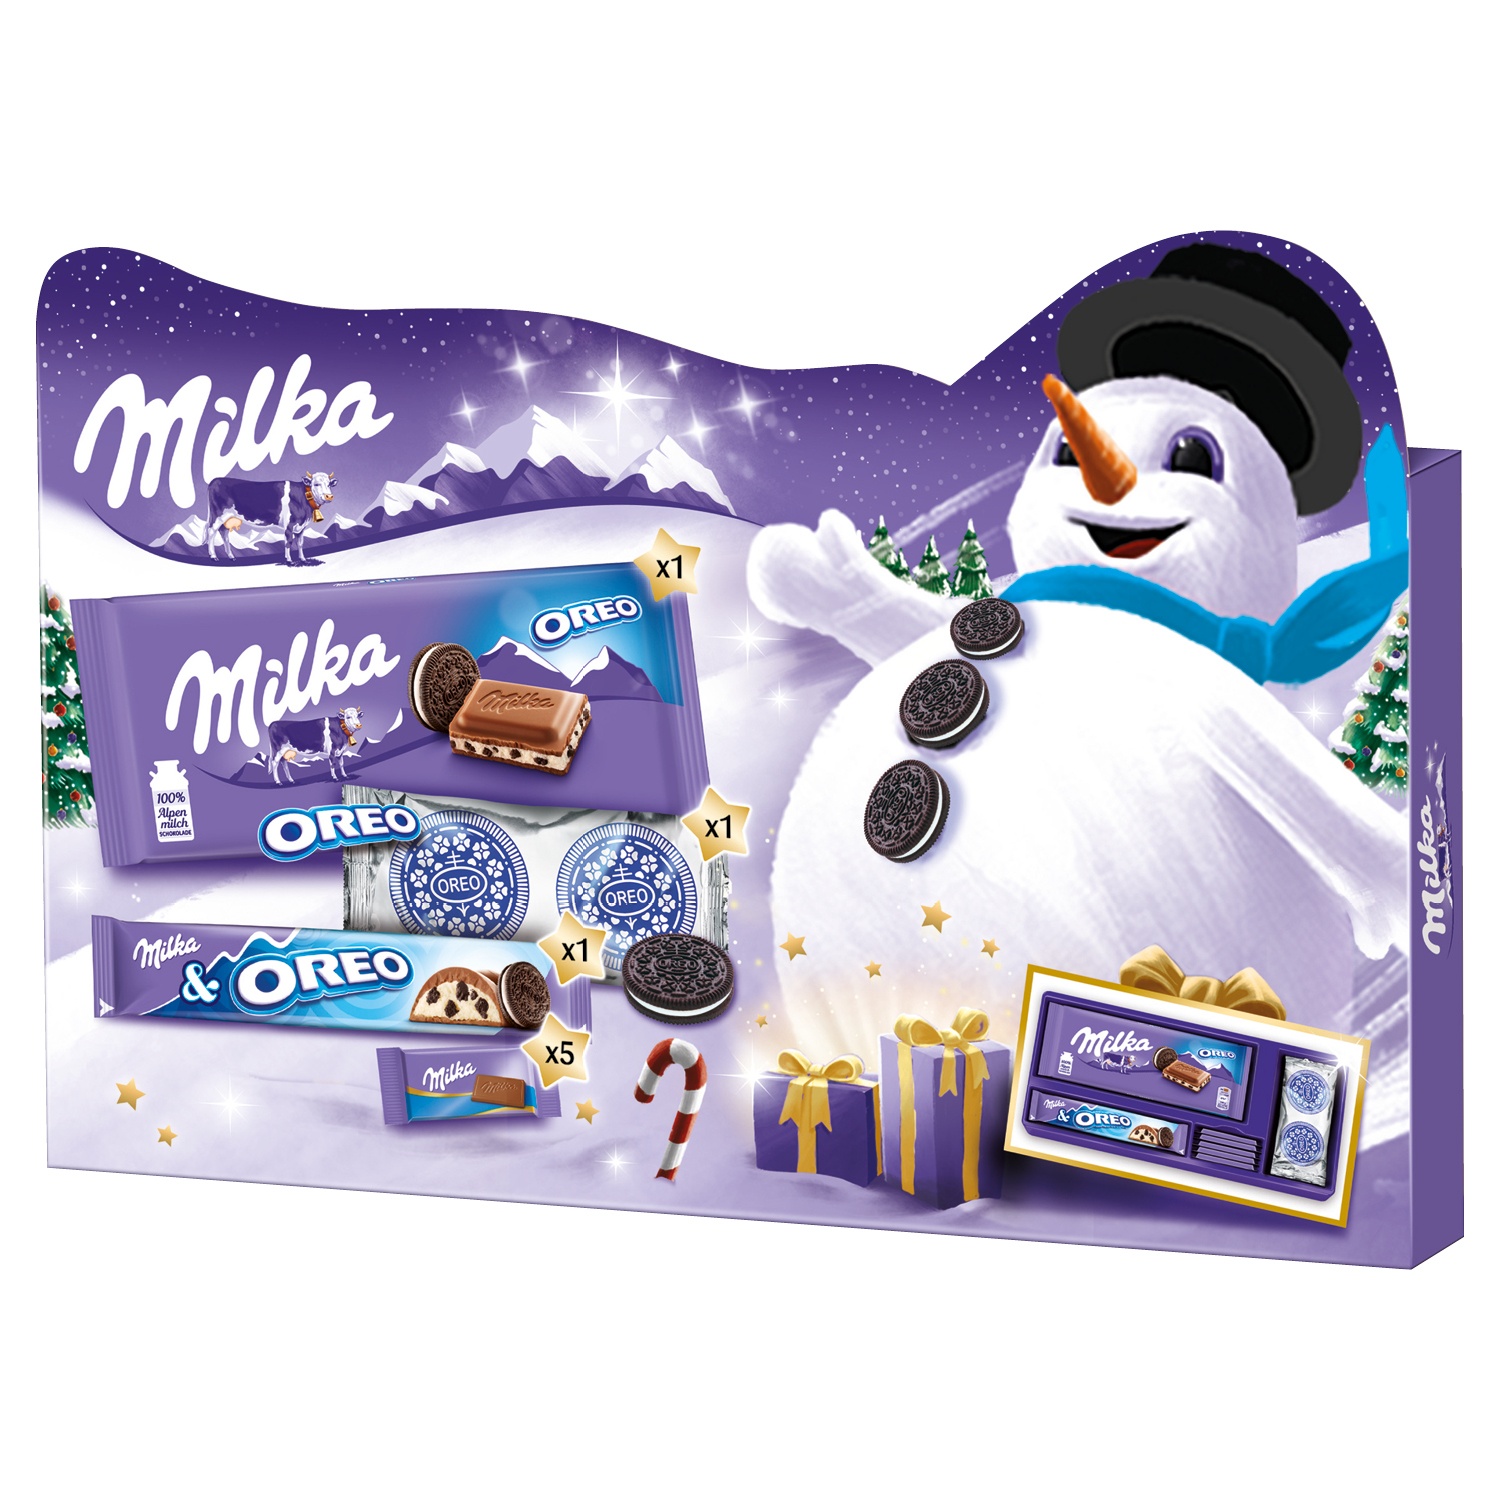 Milka & OREO Weihnachtsgeschenkbox 182 g